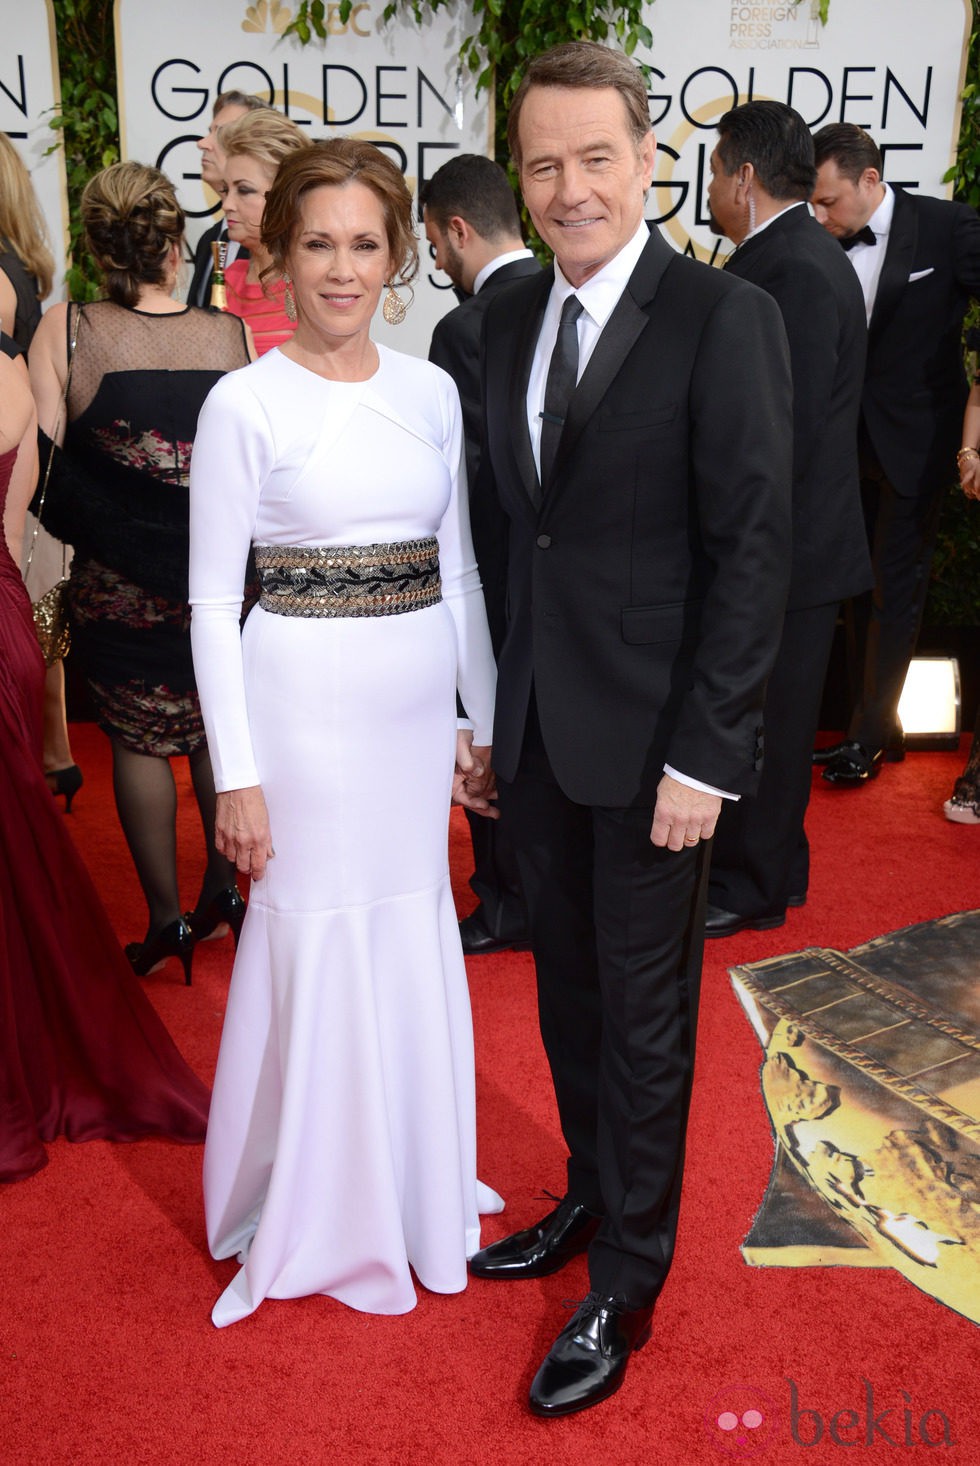 Bryan Cranston y Robin Dearden en la alfombra roja de los Globos de Oro 2014